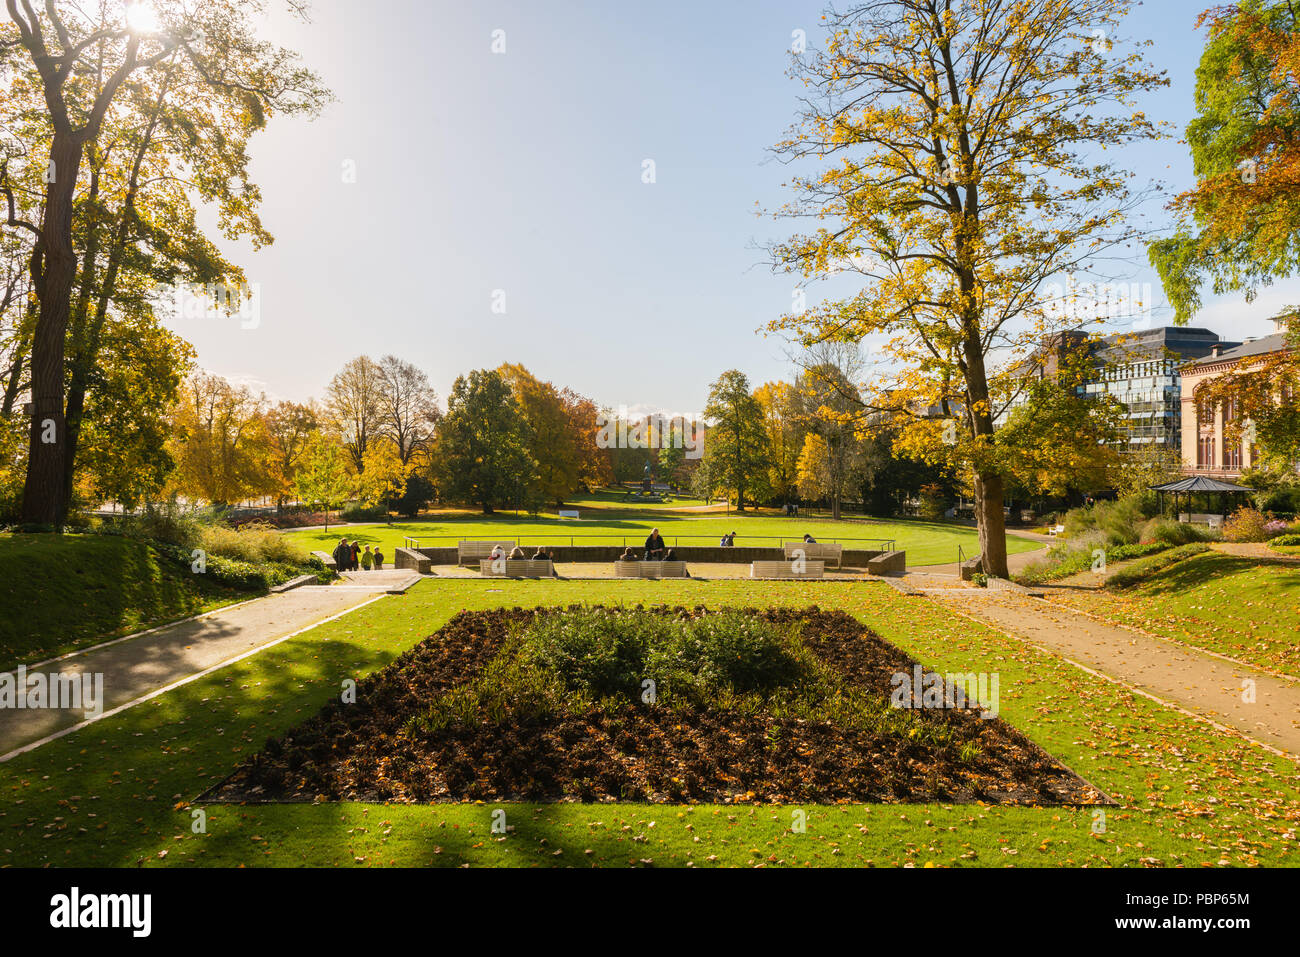 Schlossgarten ou jardin du château, le temps d'automne, feuillage d'automne, Kiel, capitale du Schleswig-Holstein, Allemagne, Europe Banque D'Images